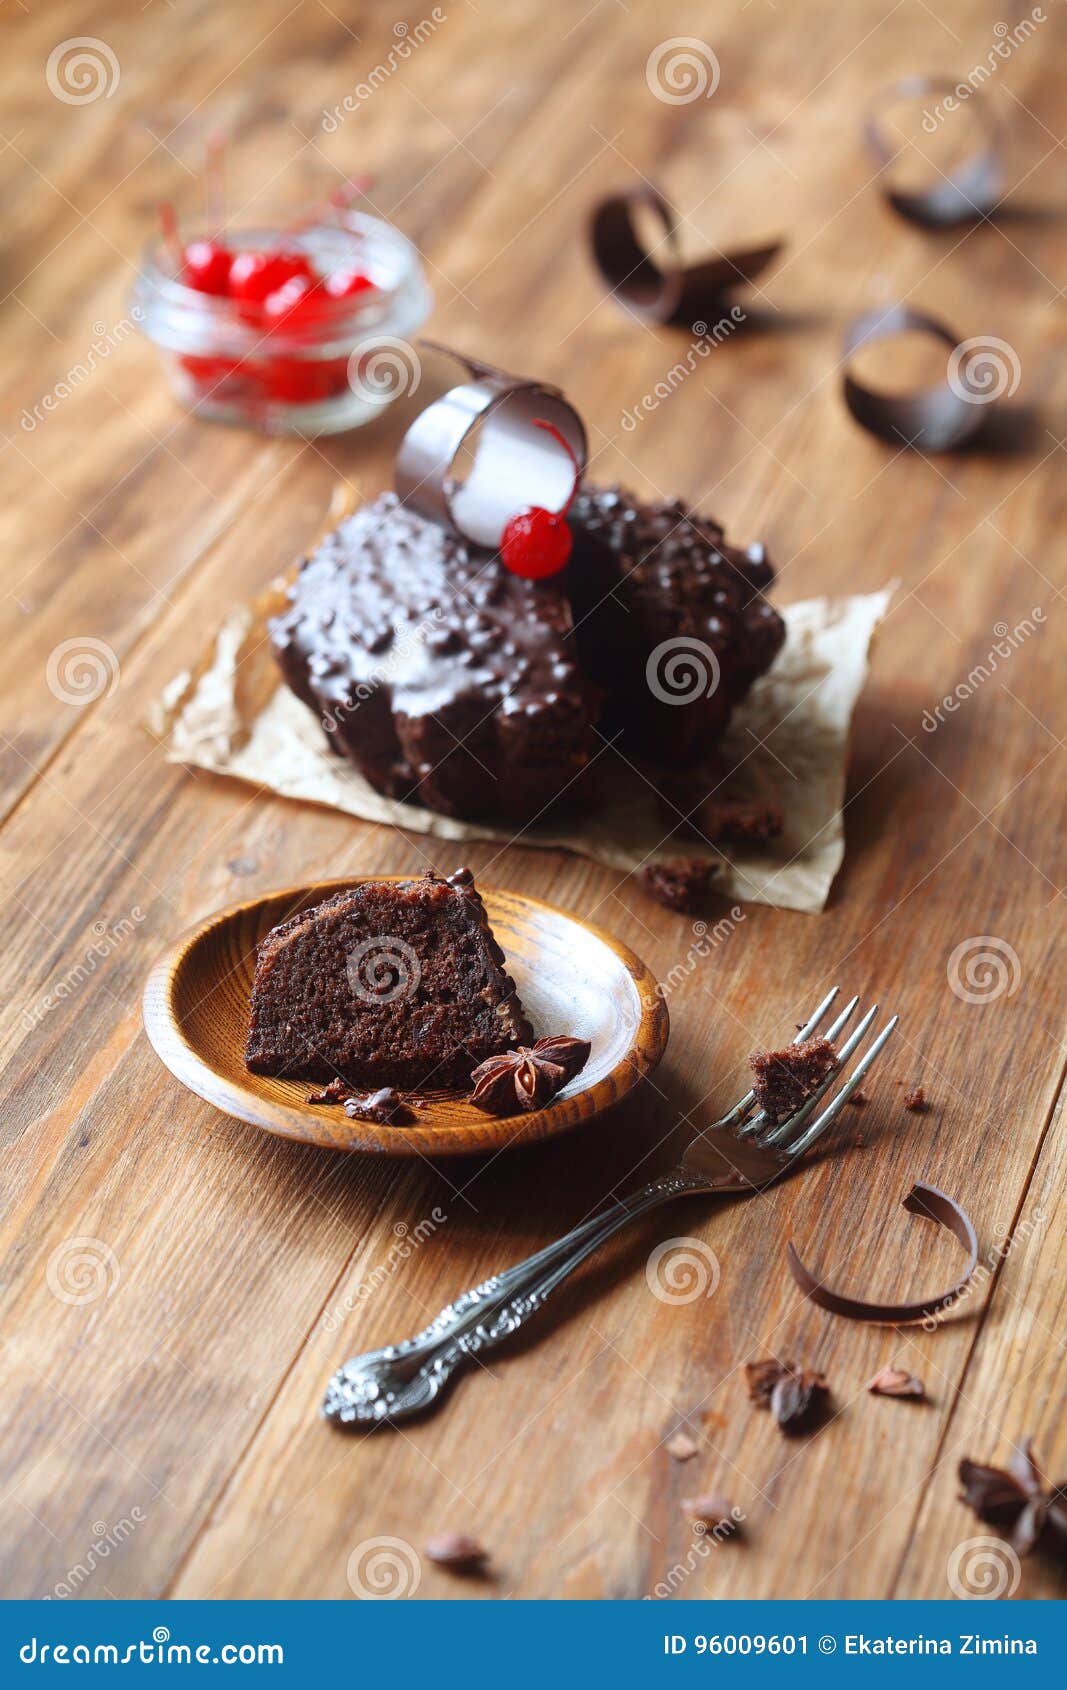 白色背景中突显的碎黑巧克力和熟樱桃 库存照片. 图片 包括有 特写镜头, 类似, 发狂, 生气勃勃, 樱桃 - 176668328